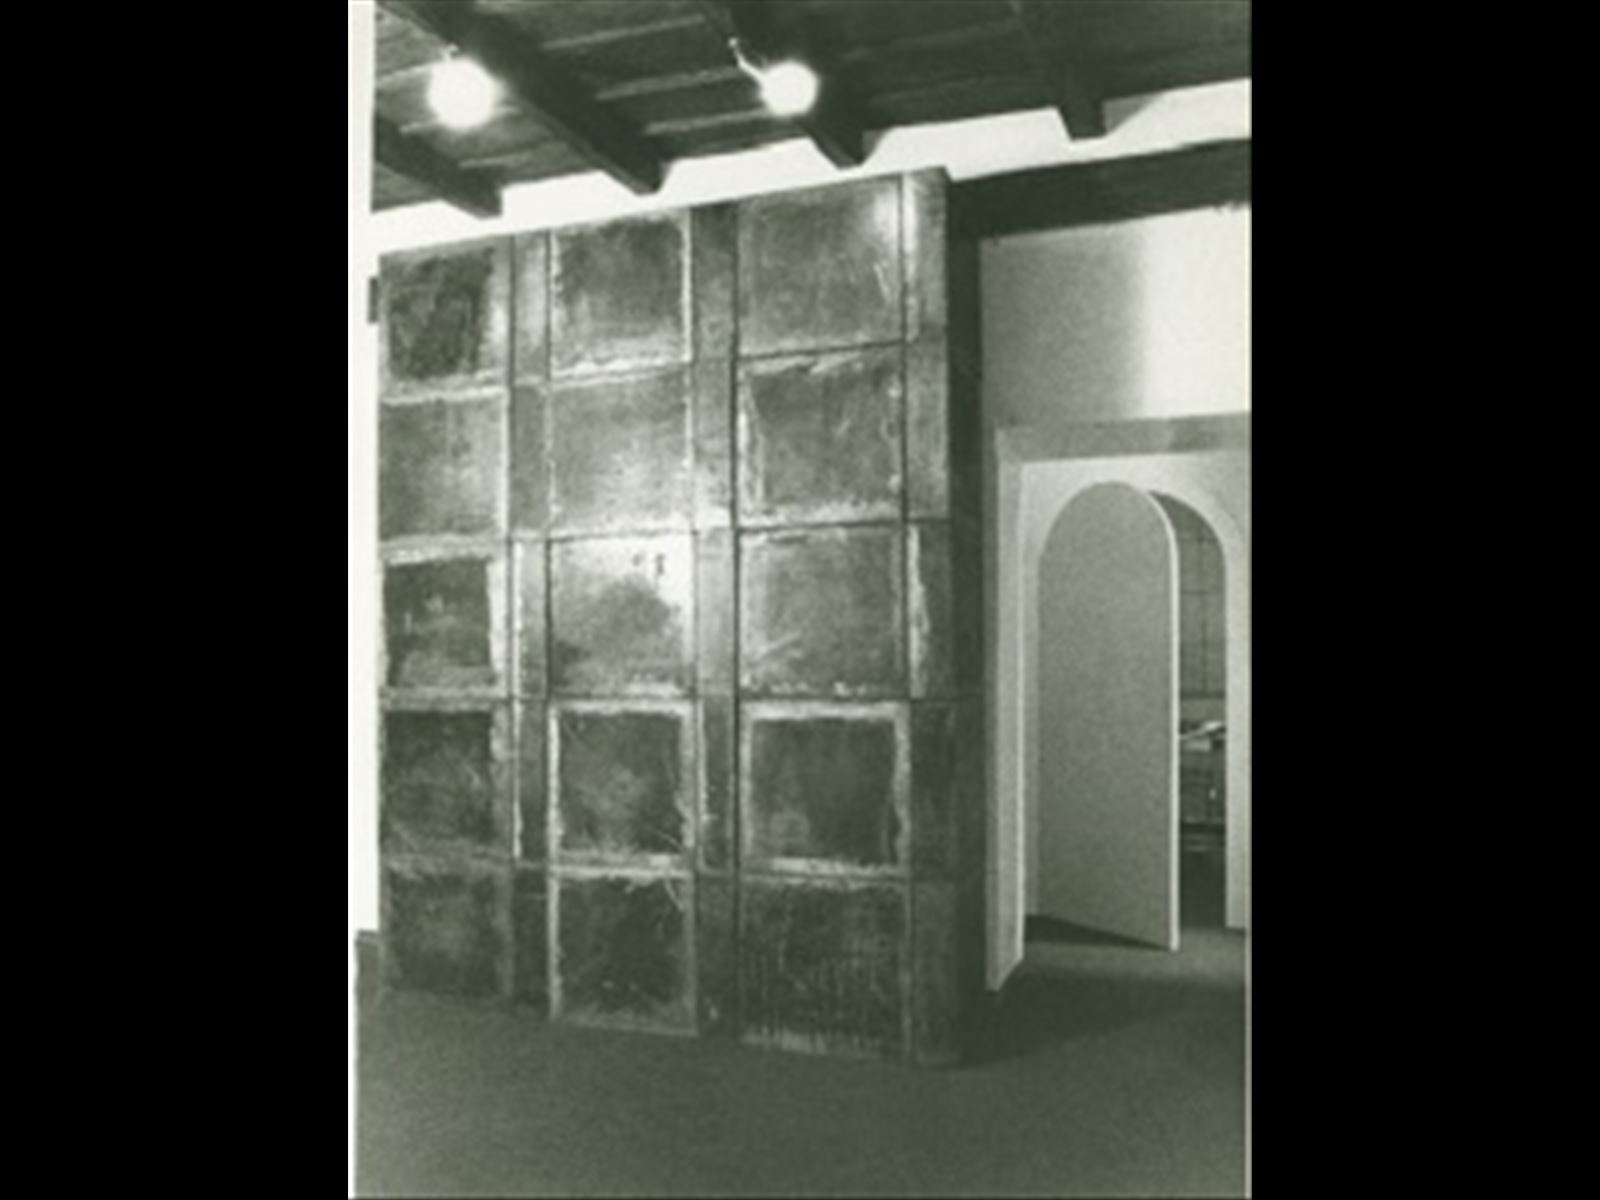 Azione trasformativa 2, articolazione verticale 10-20-30 moduli. Nicola Carrino, Primo Piano.  Roma, 1975.  Archivio Nicola Carrino.